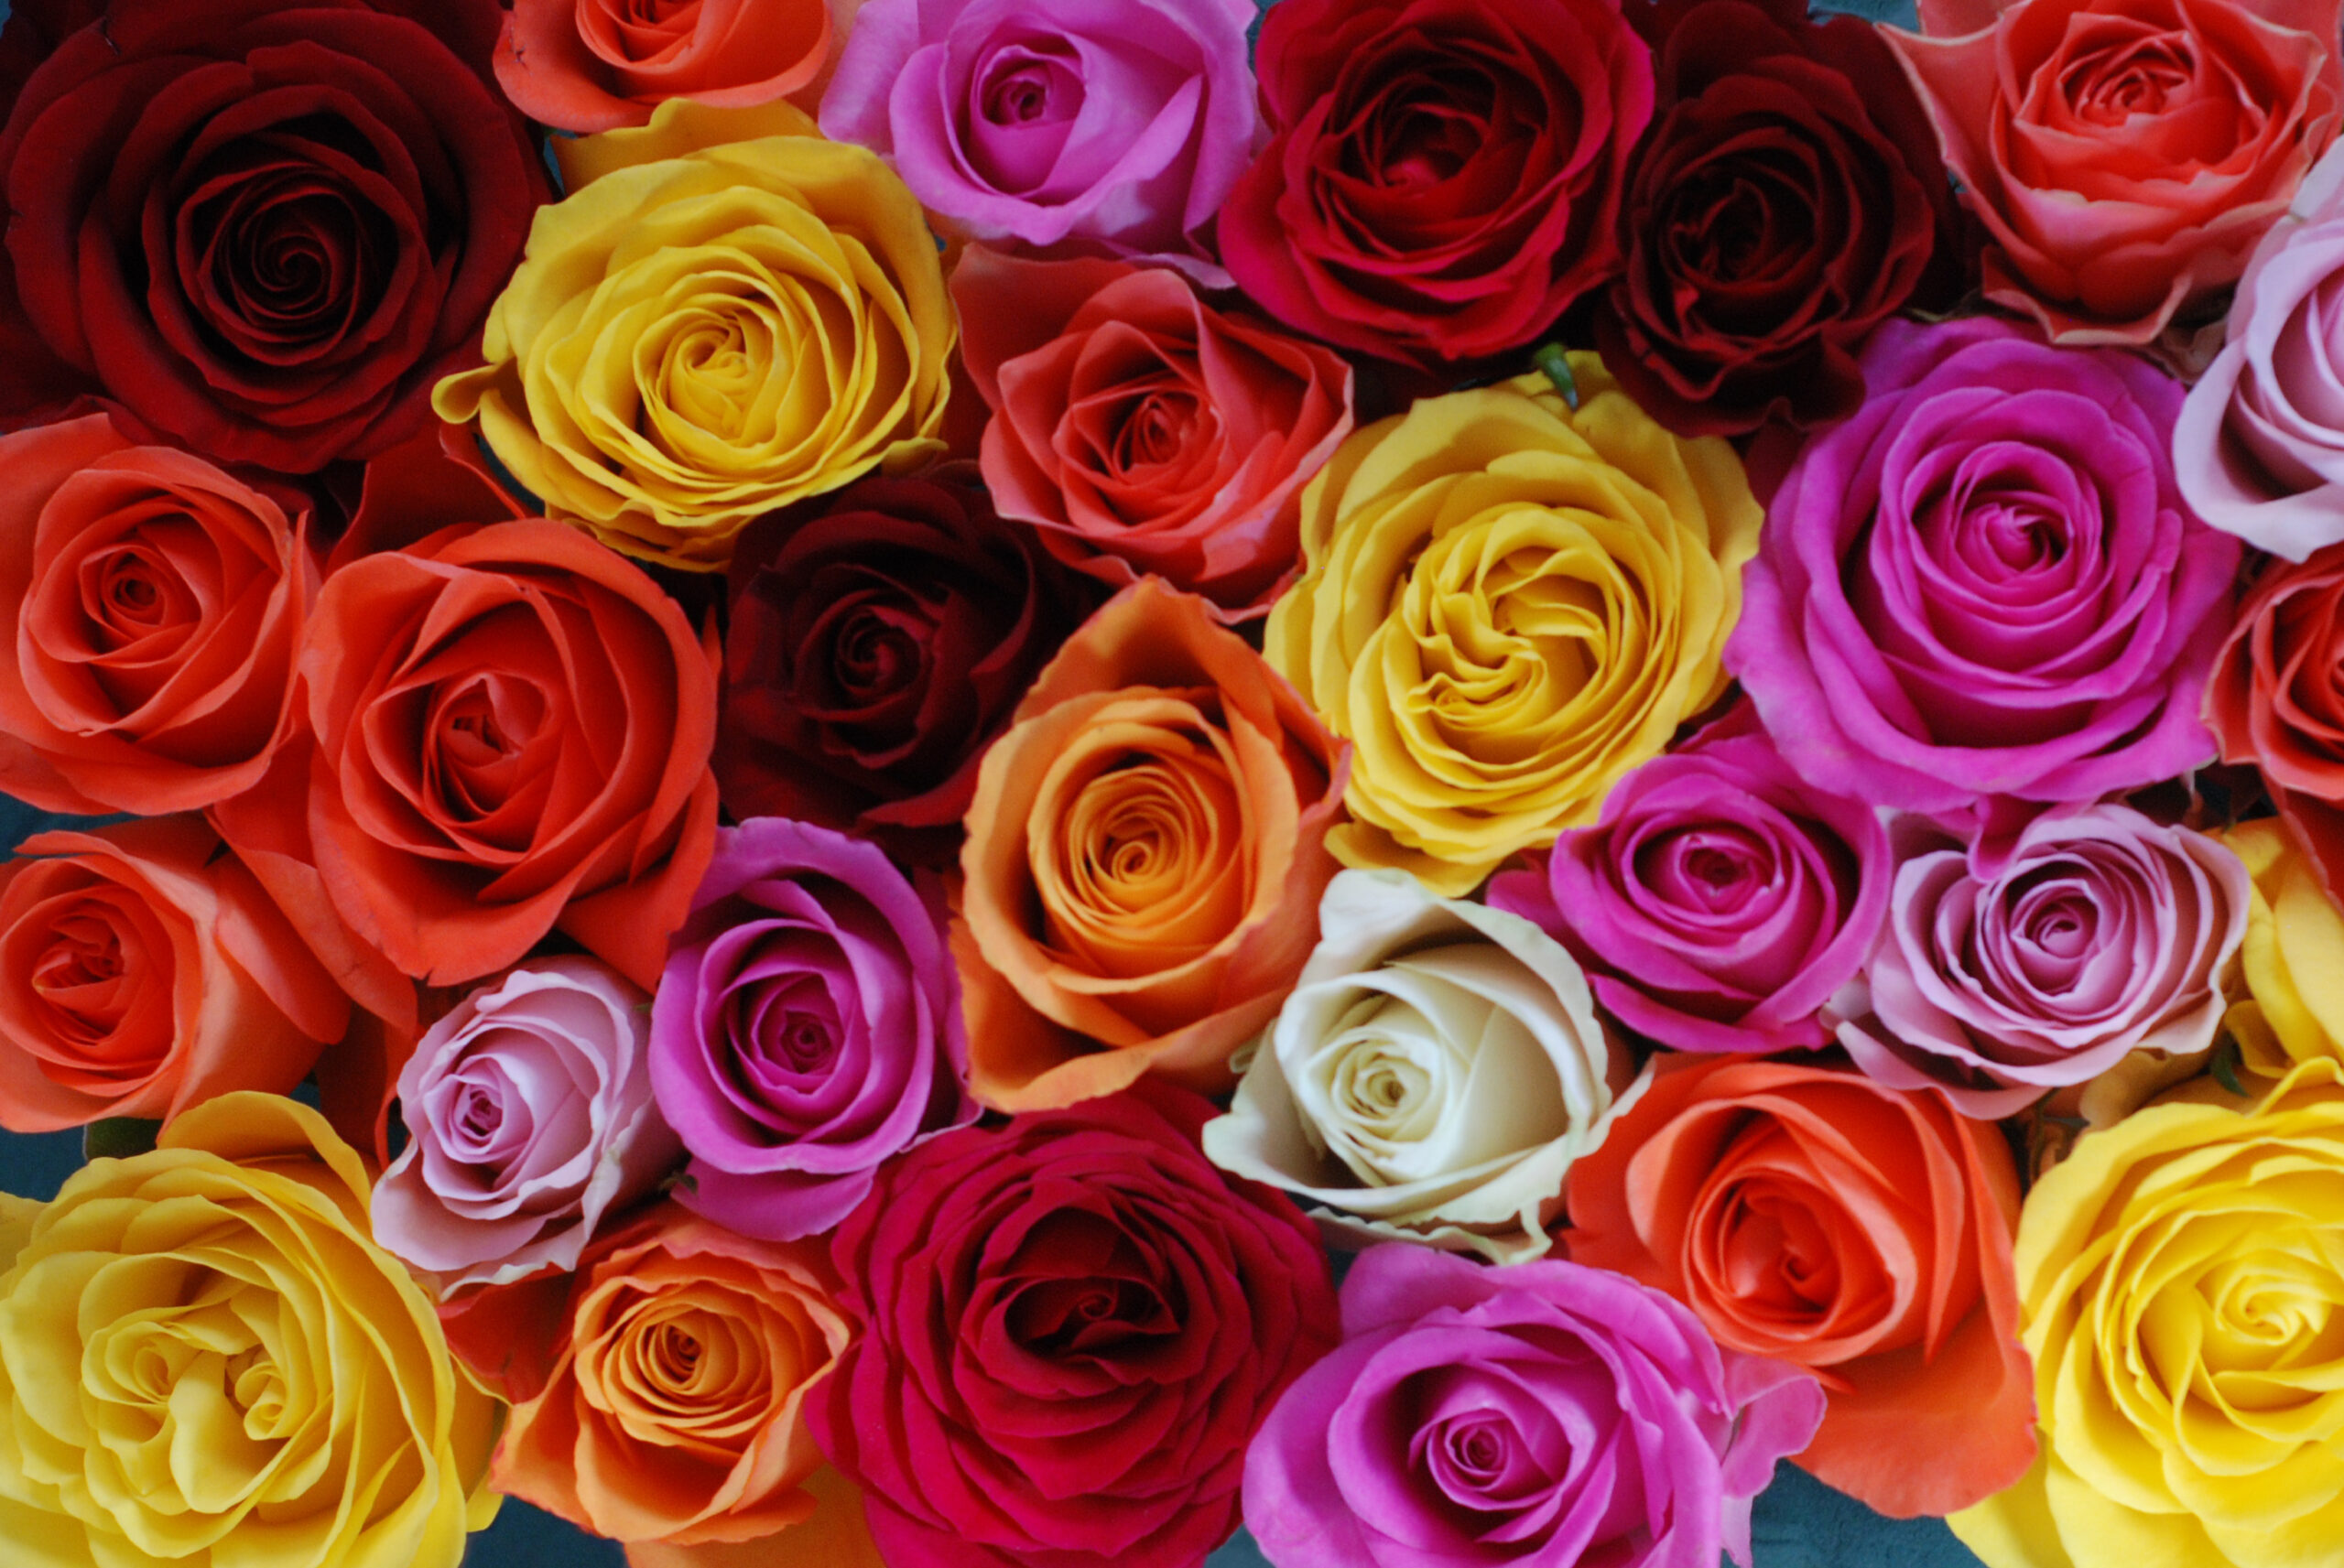 Køb Valentine’s-roserne i dit lokale supermarked